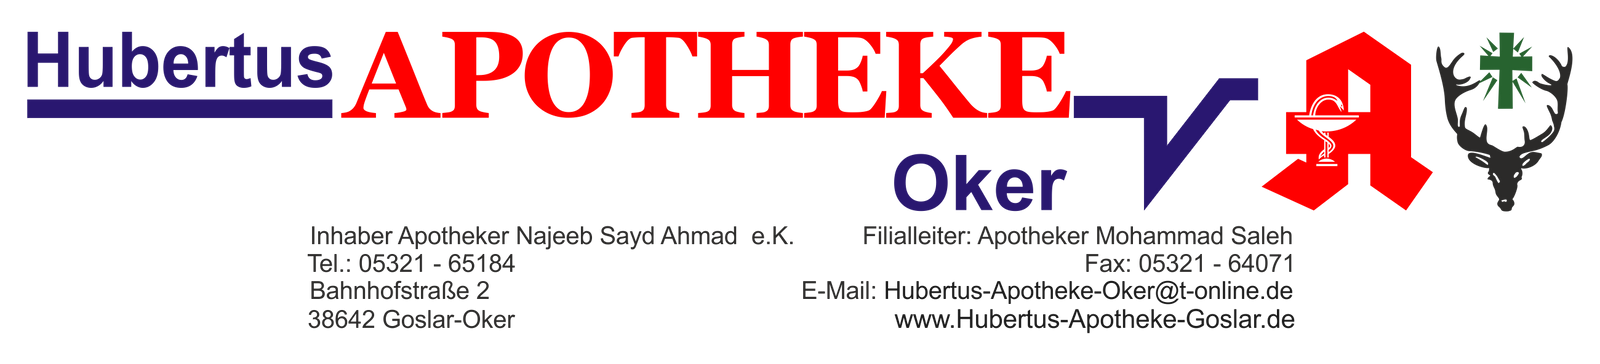 Logo der Hubertus Apotheke Oker